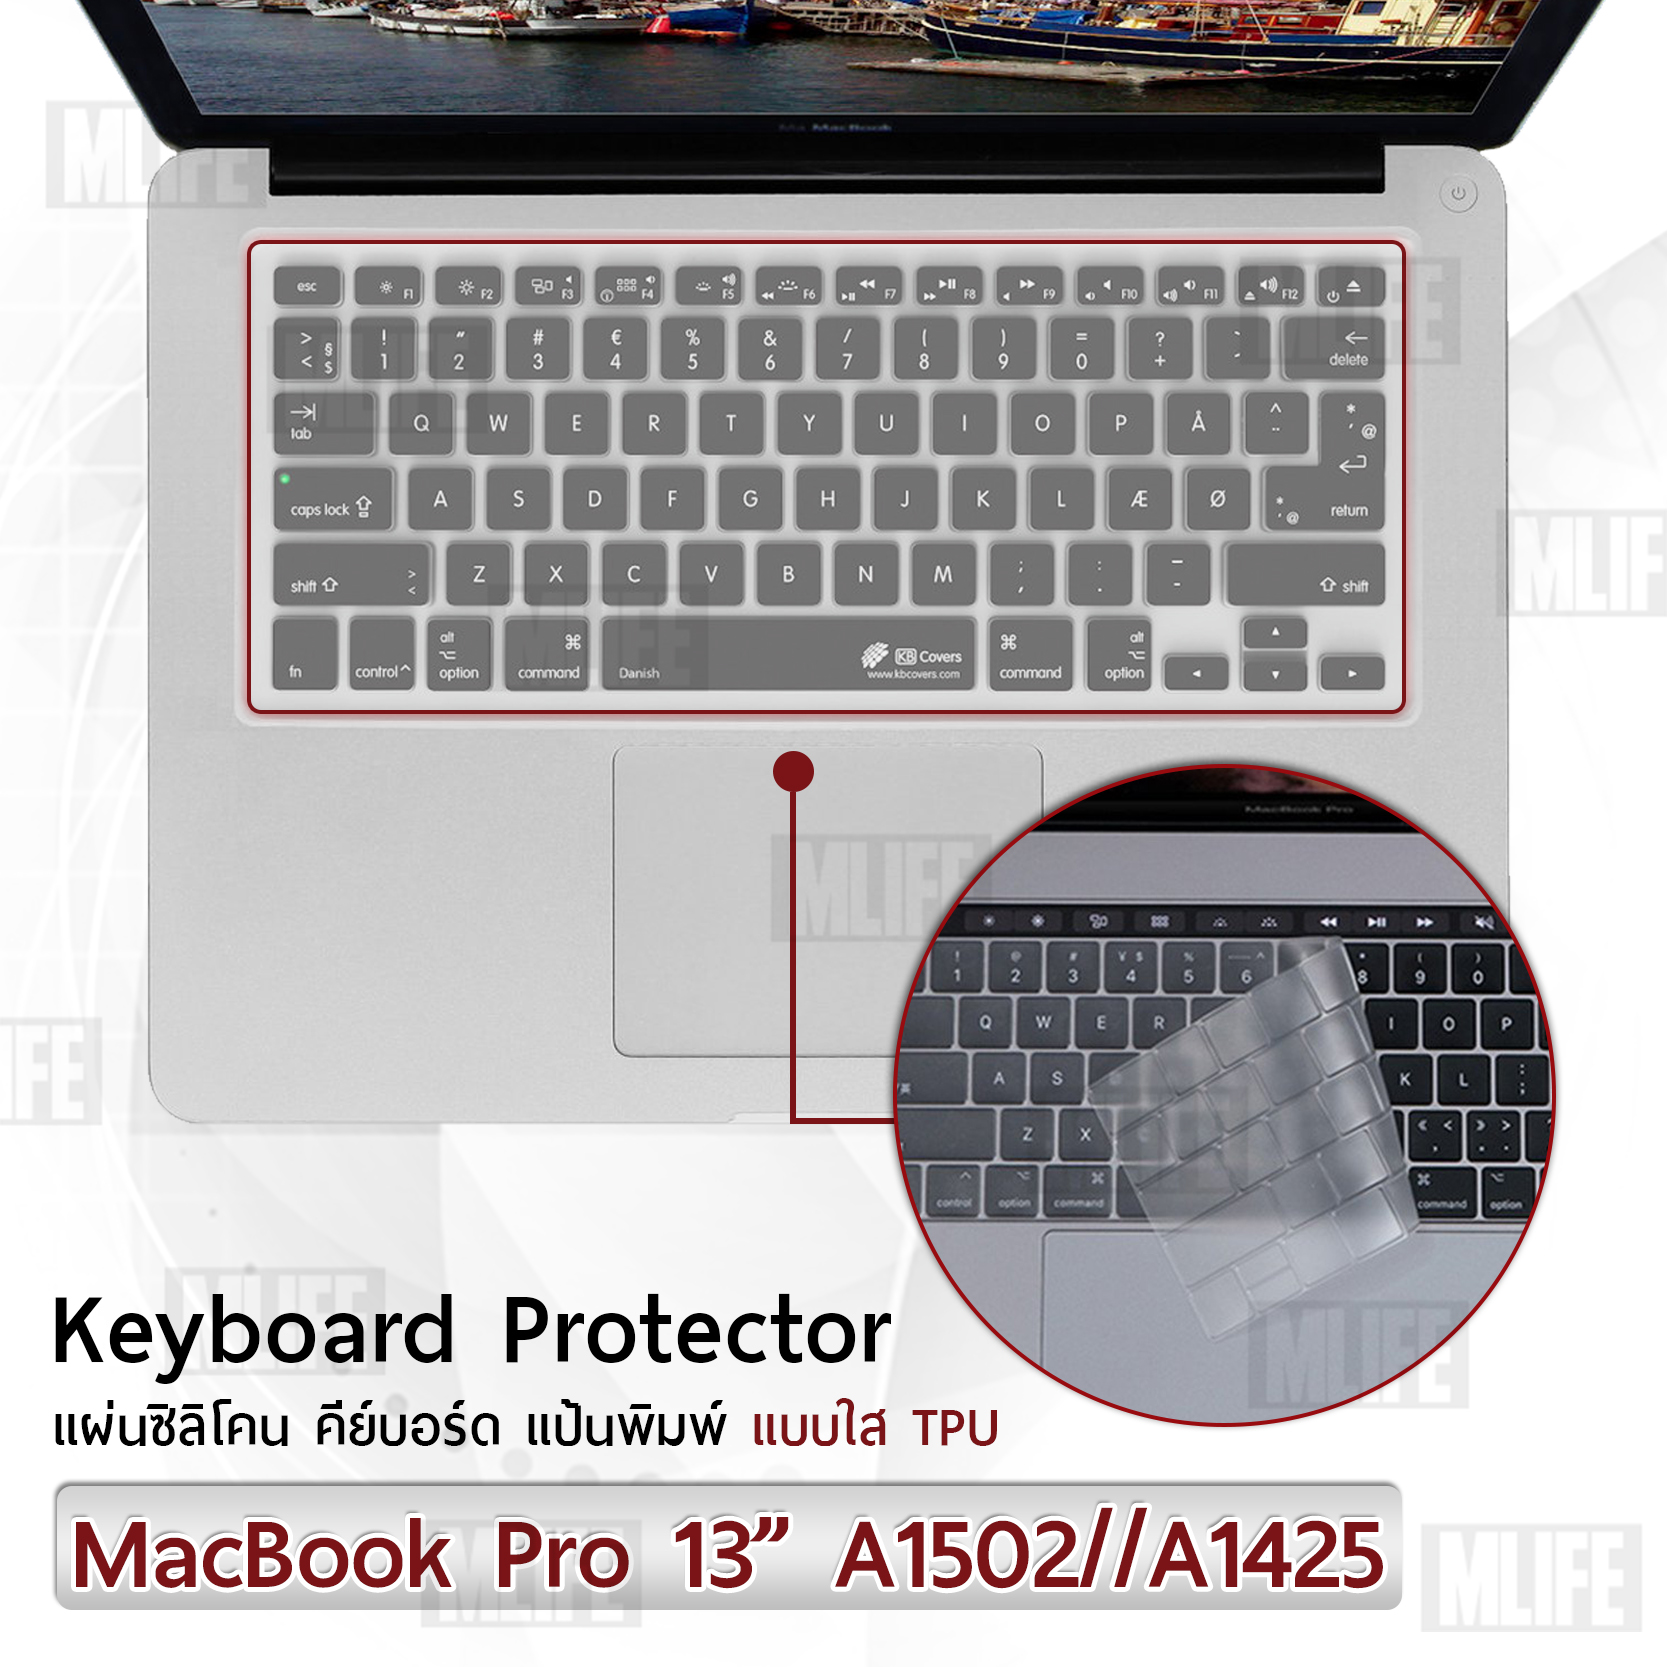 แผ่นซิลิโคน ภาษาไทย MacBook Pro 13 A1502 A1425  ซิลิโคนรอง คีย์บอร์ด กันฝุ่น - Silicone Keyboard Cover Thai Language For MacBook Pro 13” A1425, A1502 Old Version